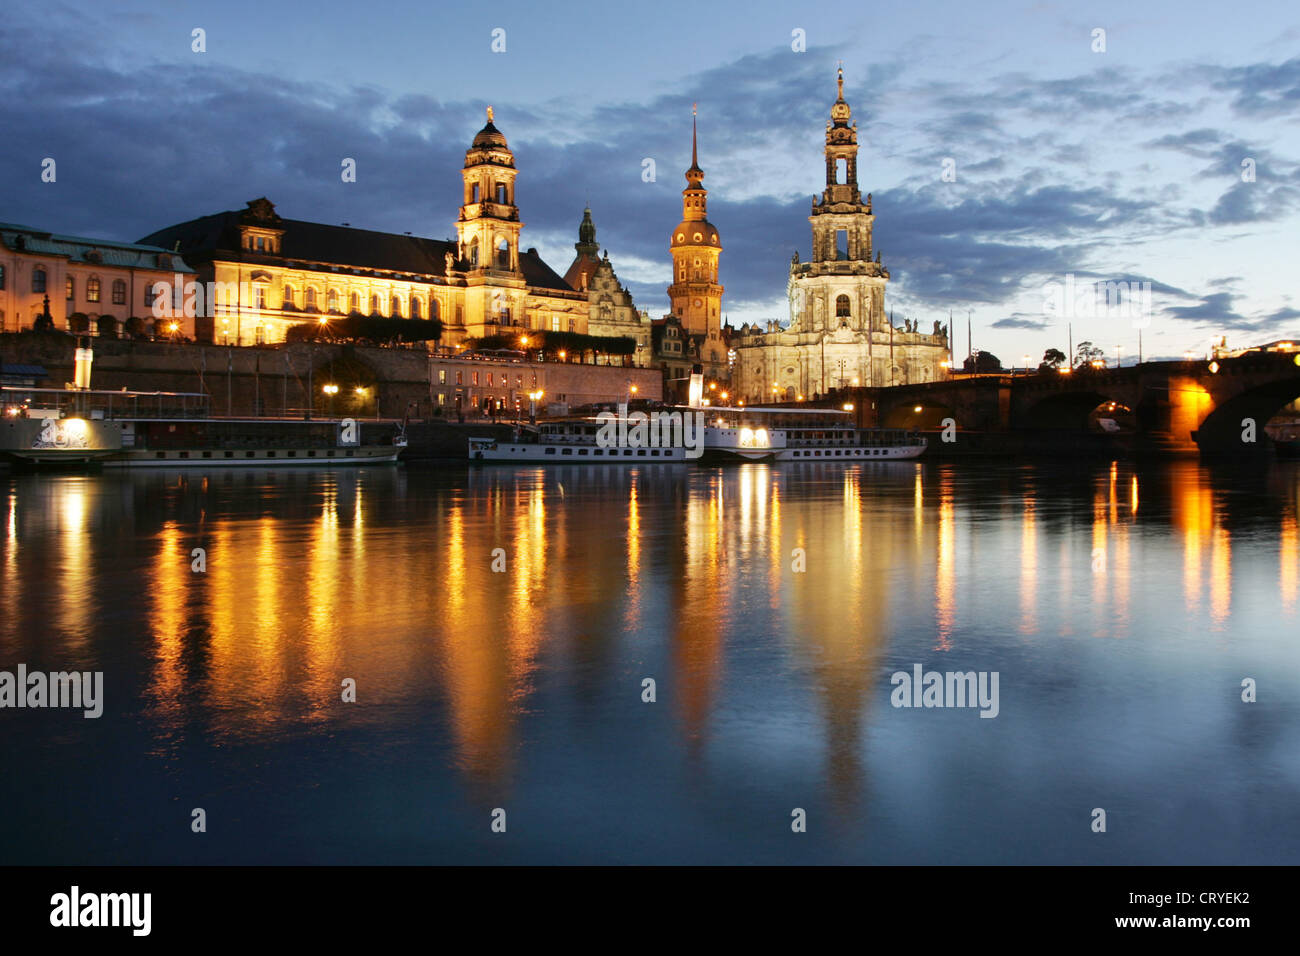 A Dresda, il centro storico di Dresda durante la notte illuminata Foto Stock